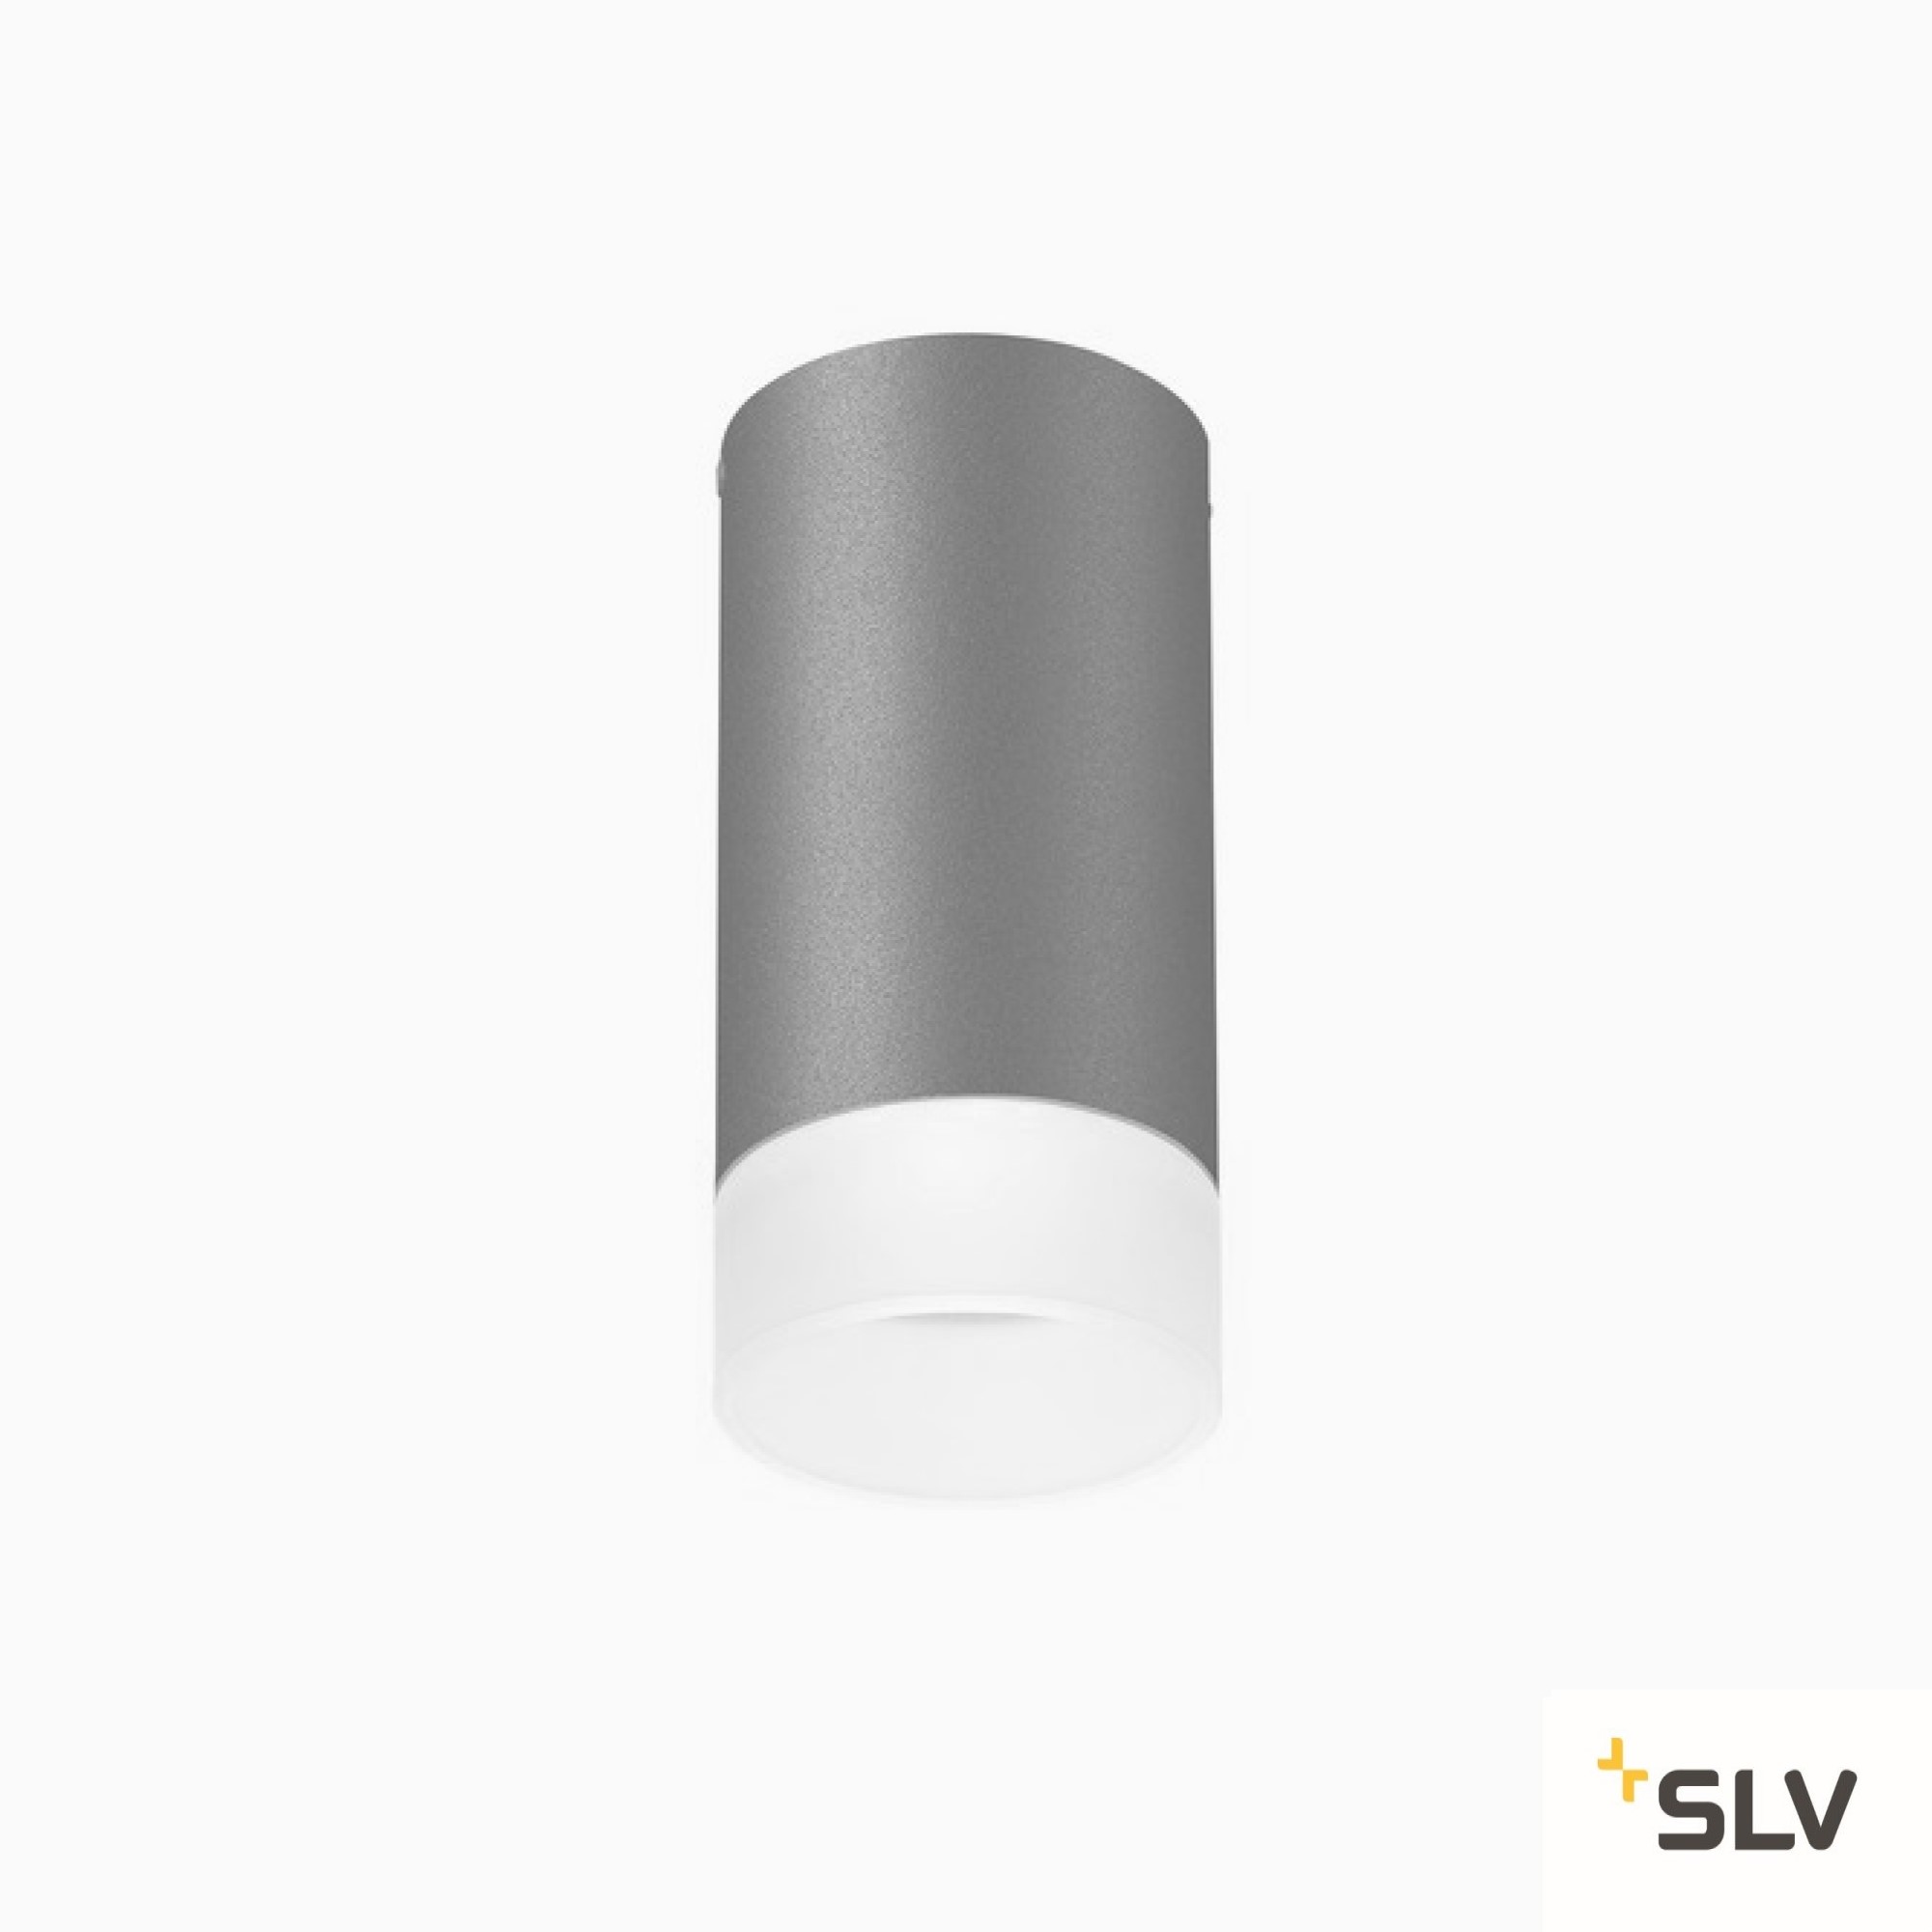 SLV ASTINA CL QPAR51 Ceiling Light grey